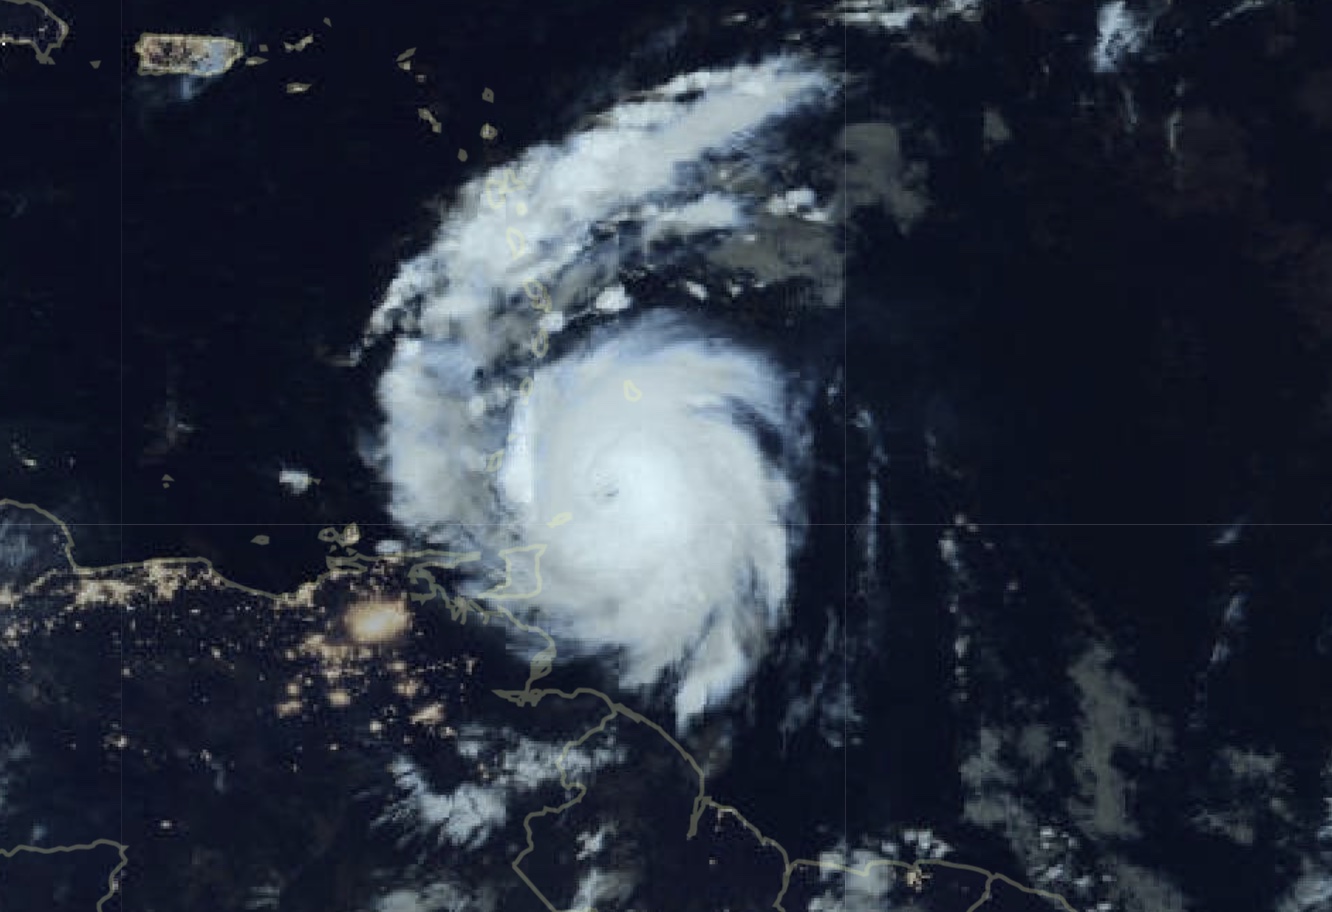     Ouragan Béryl : des rafales attendues jusqu’à 80/100 km/h sur les mornes en Guadeloupe 

